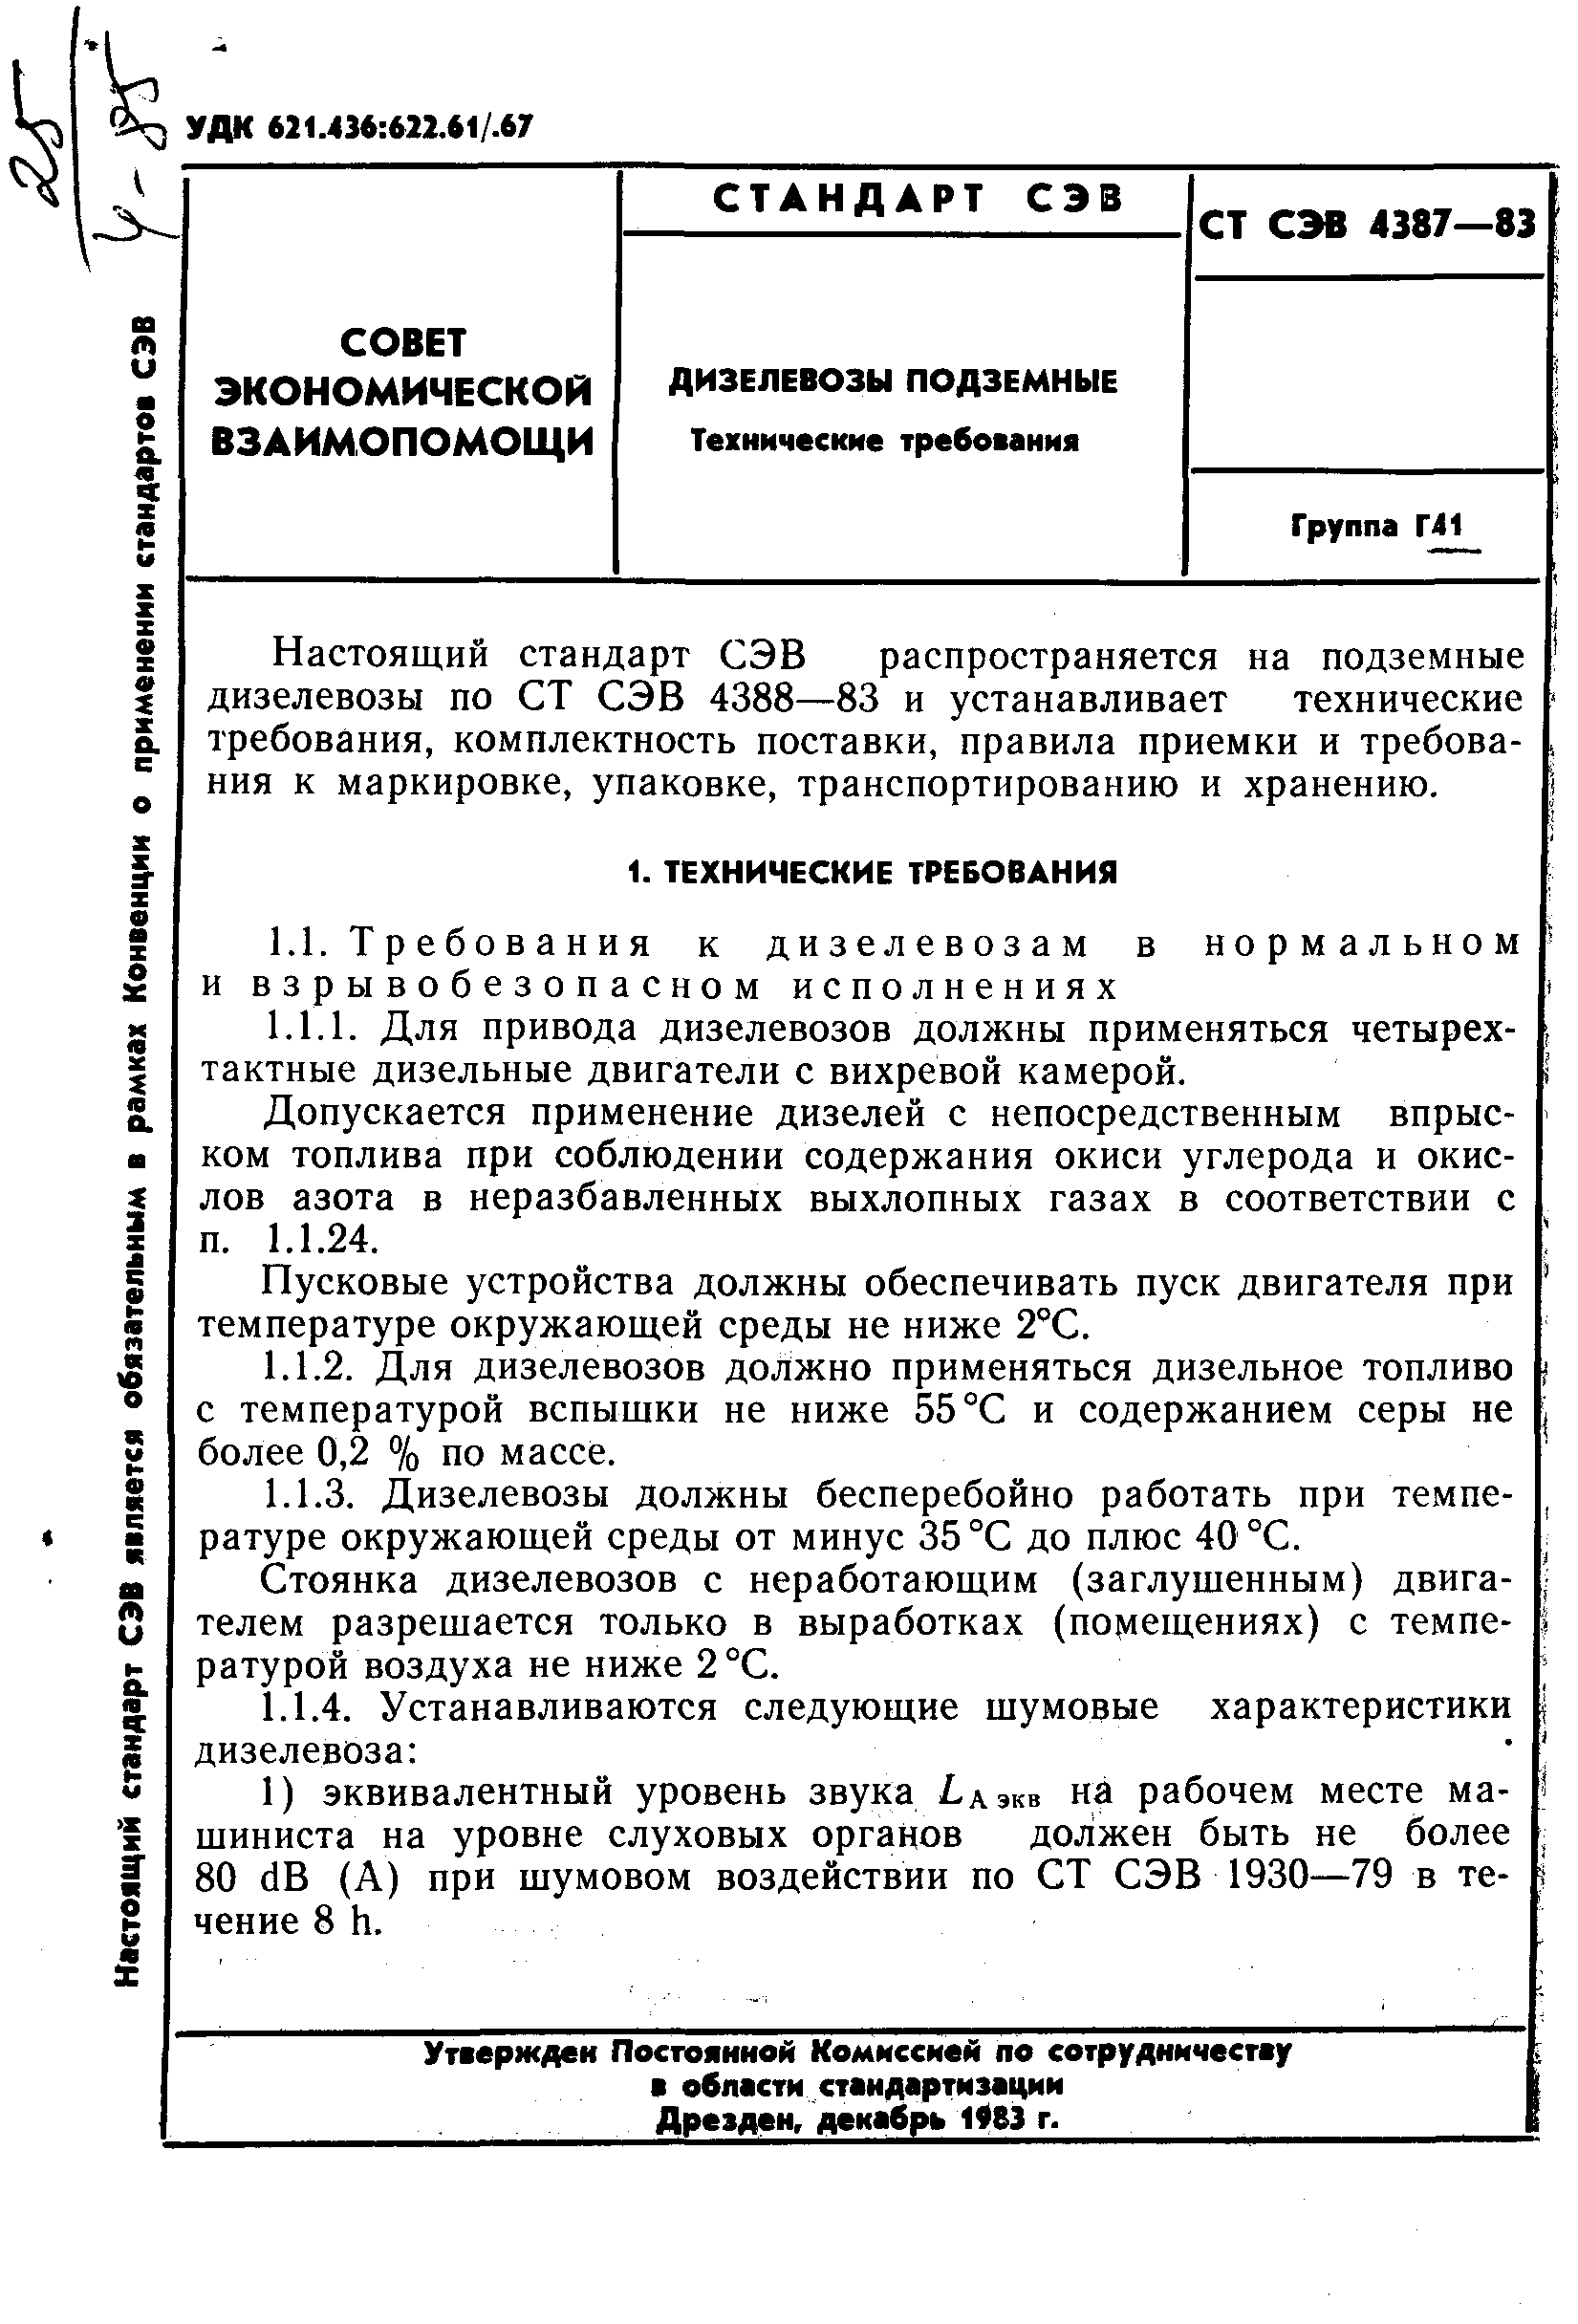 СТ СЭВ 4387-83